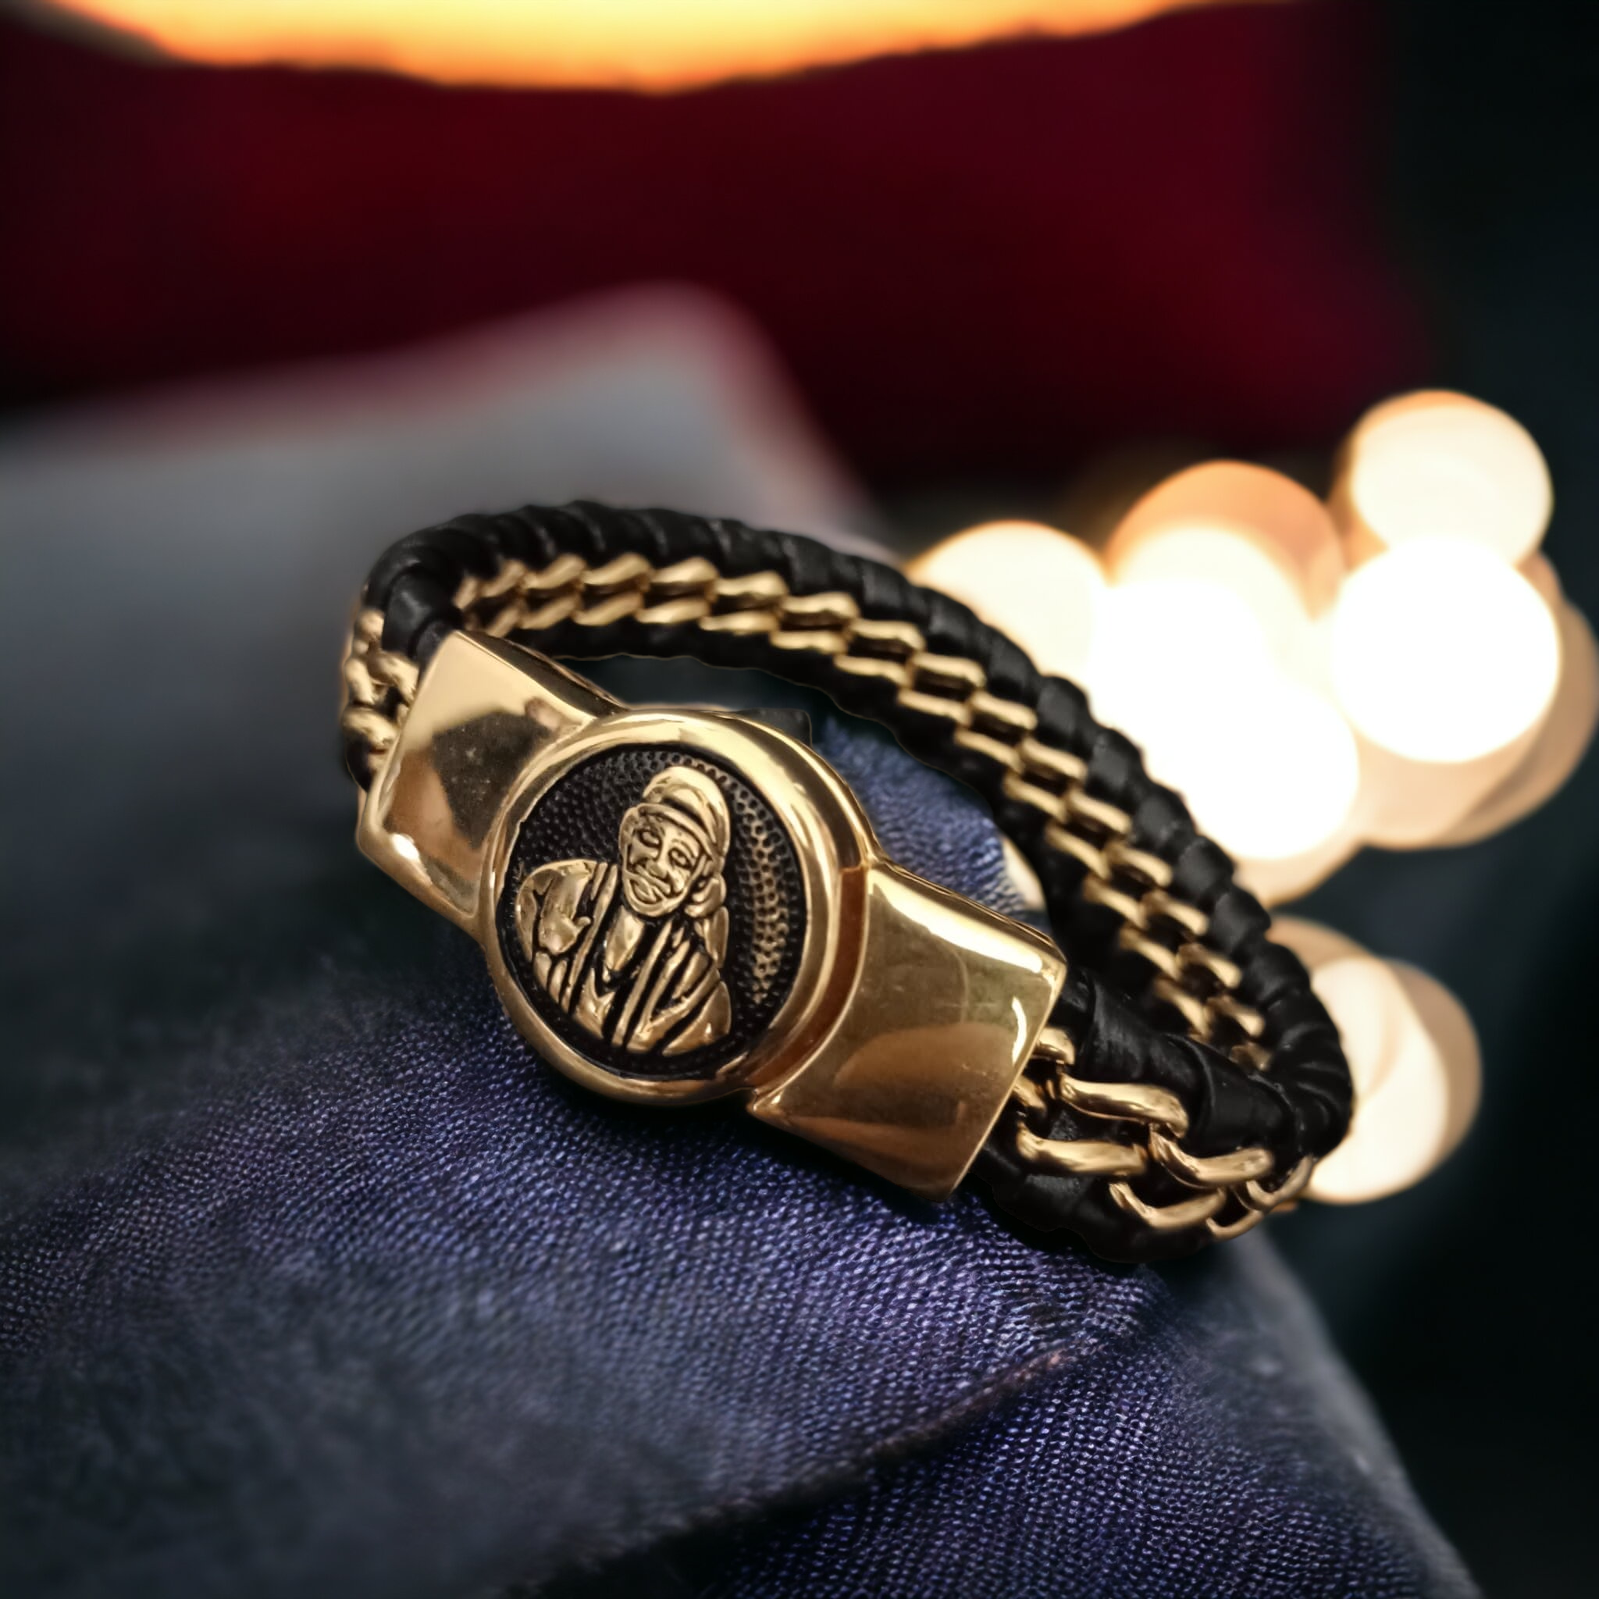 Jack Marc New Sai Baba Devotional Gold Bracelet For Men-Jack Marc - JACKMARC.COM